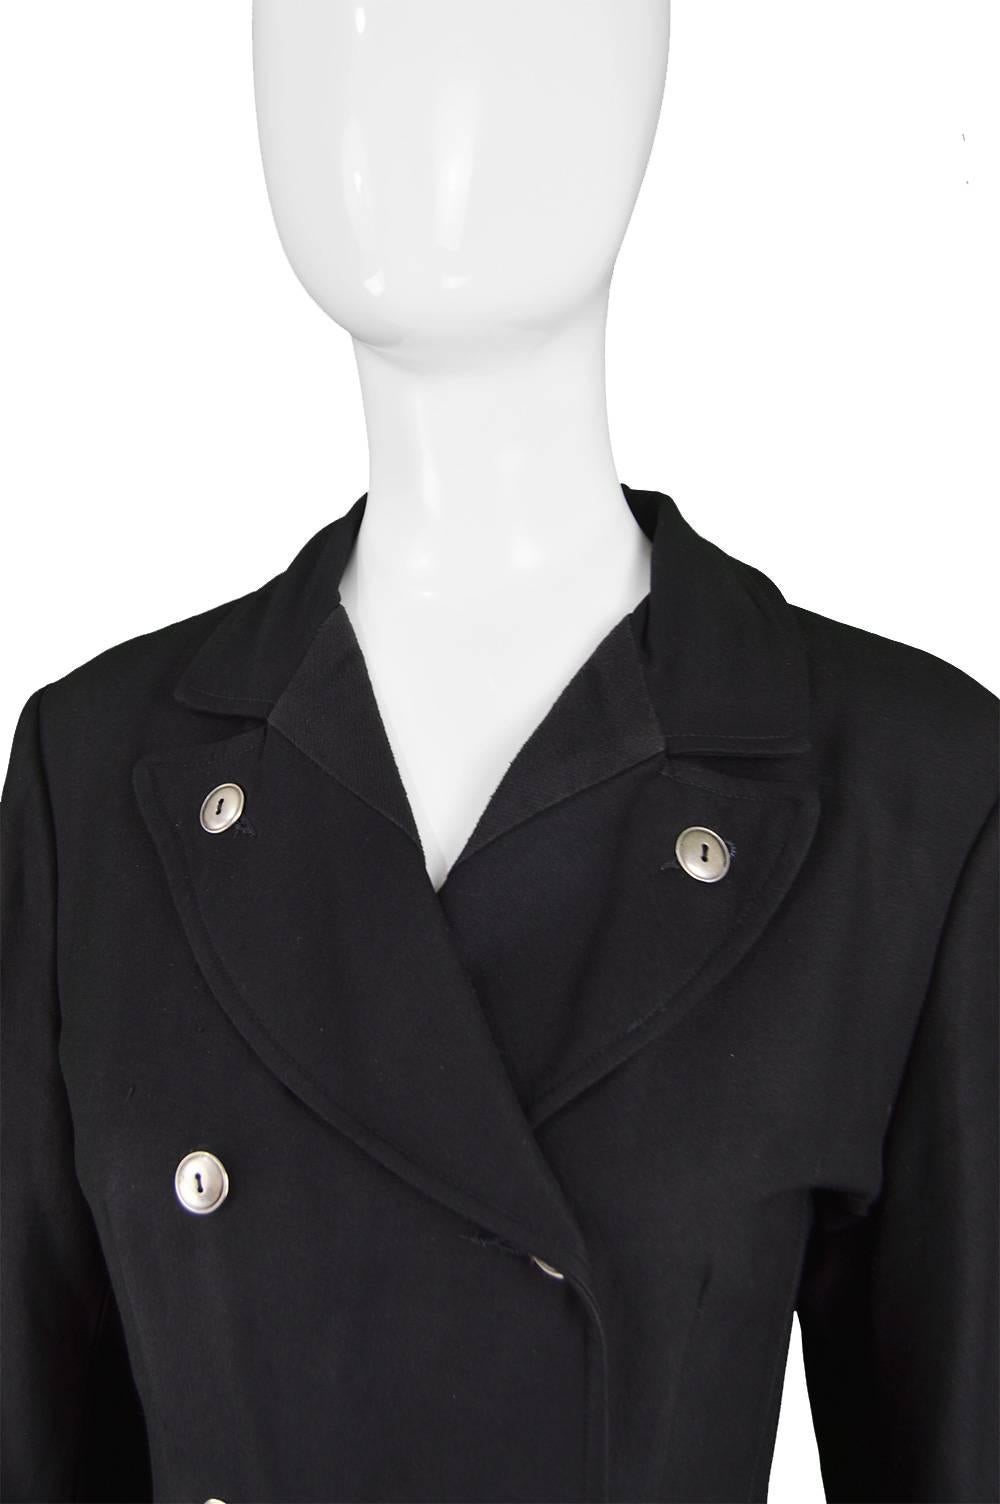 Jean Paul Gaultier Vintage 1980s Women's Black Double Breasted Blazer Jacket For Sale 2